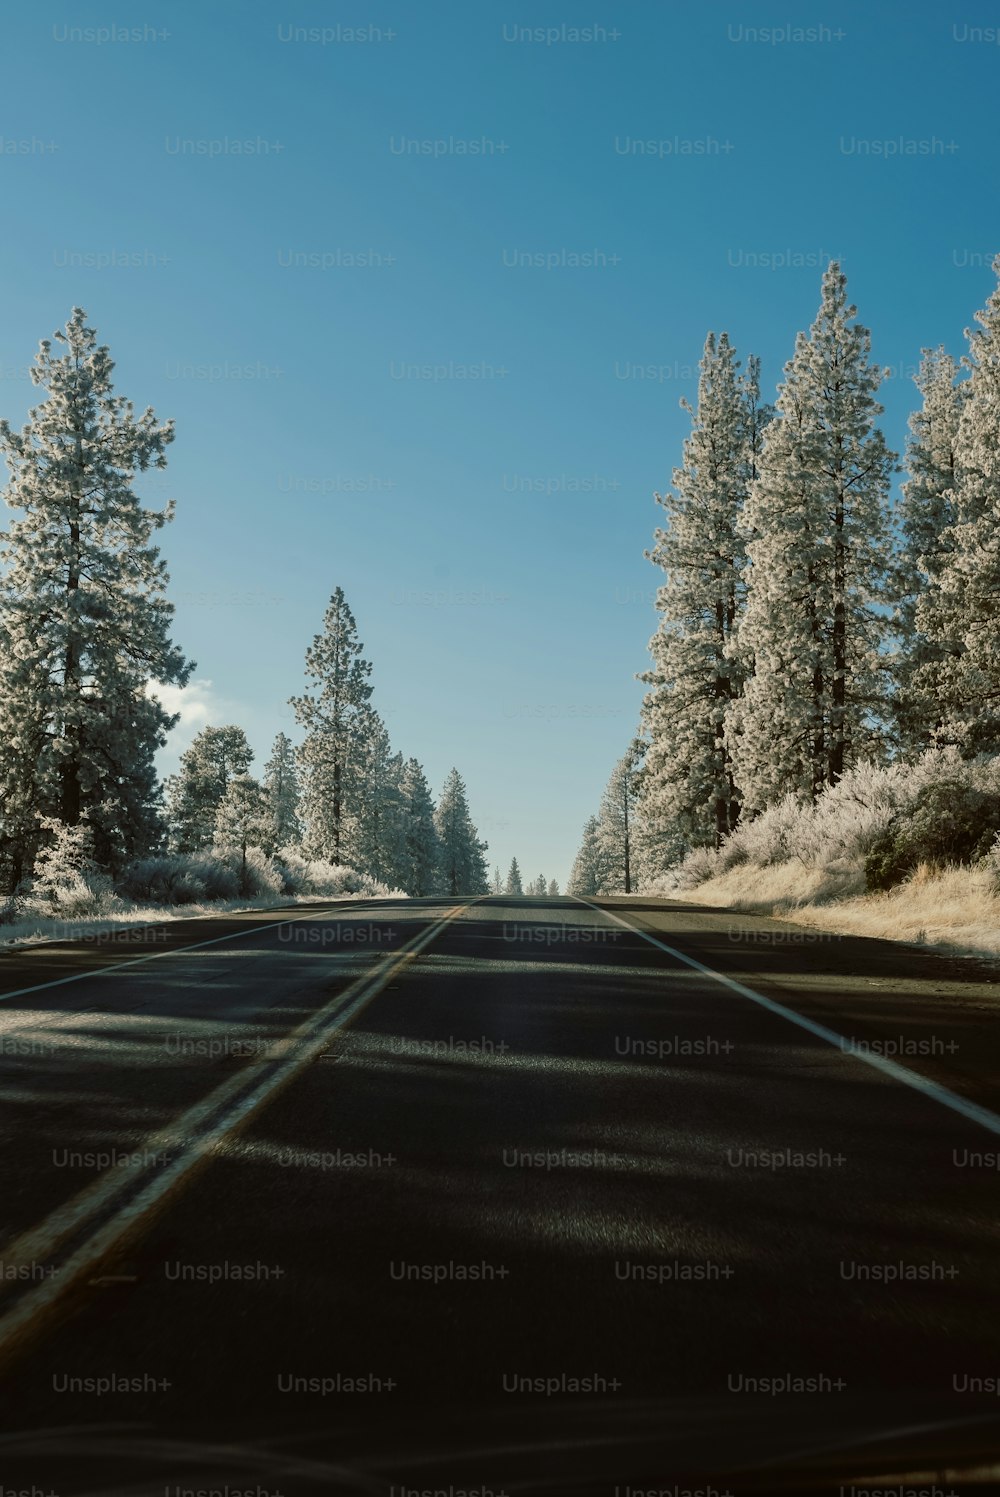 Un camino con árboles a ambos lados y nieve en el suelo